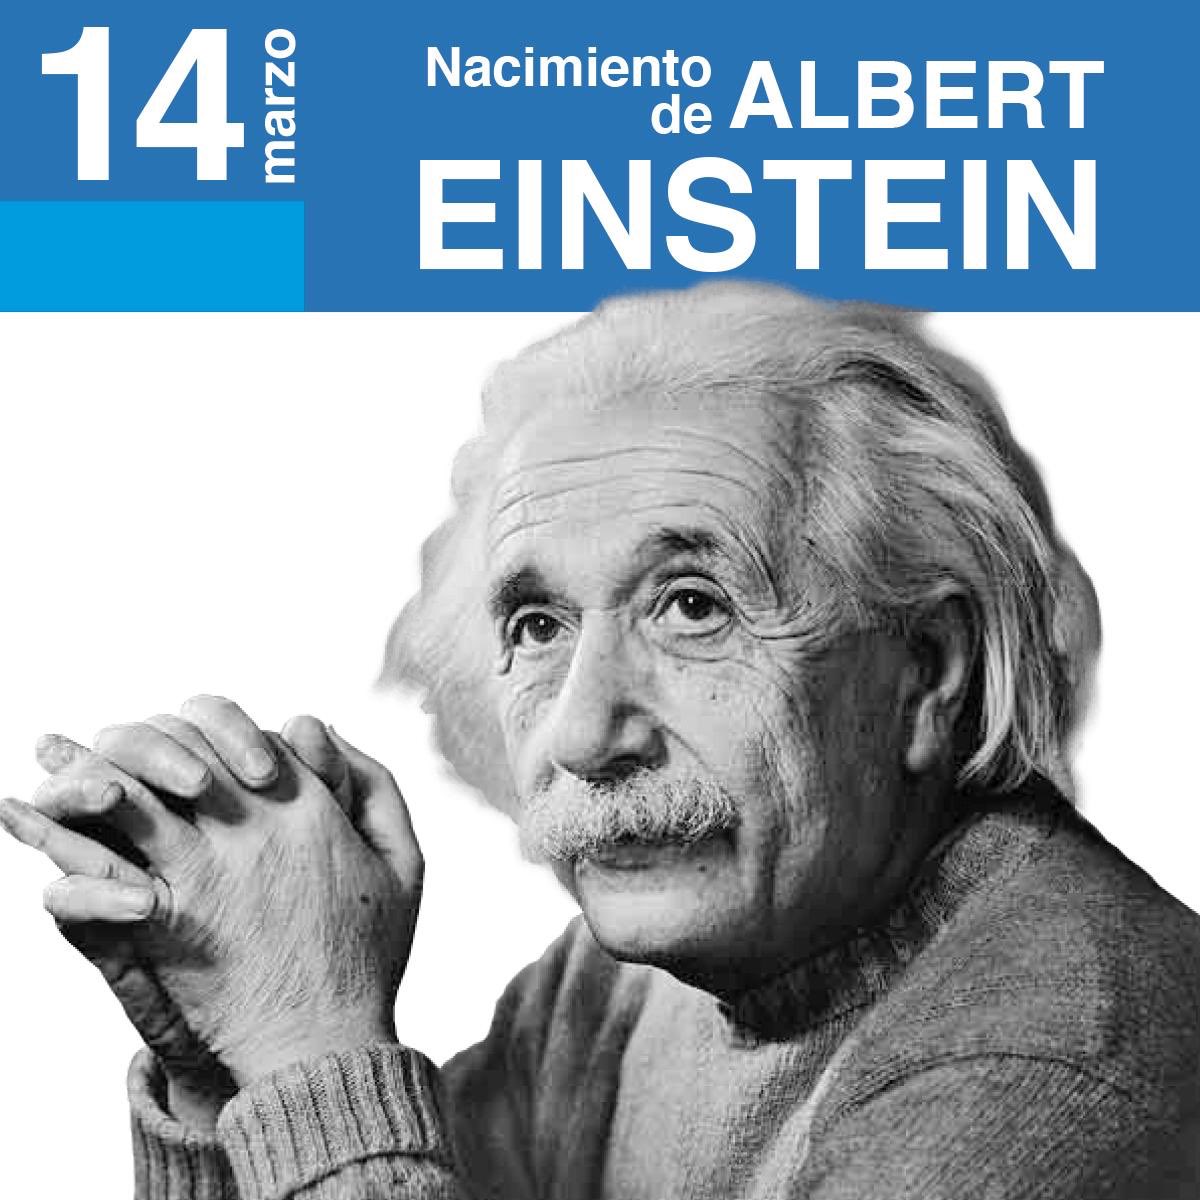 Senacyt Panamá on Twitter: "Asimismo cabe destacar que hoy, 14 de marzo,  también se celebra el nacimiento de una de las grandes mentes científica,  Albert Einstein, y se conmemora la desaparición física